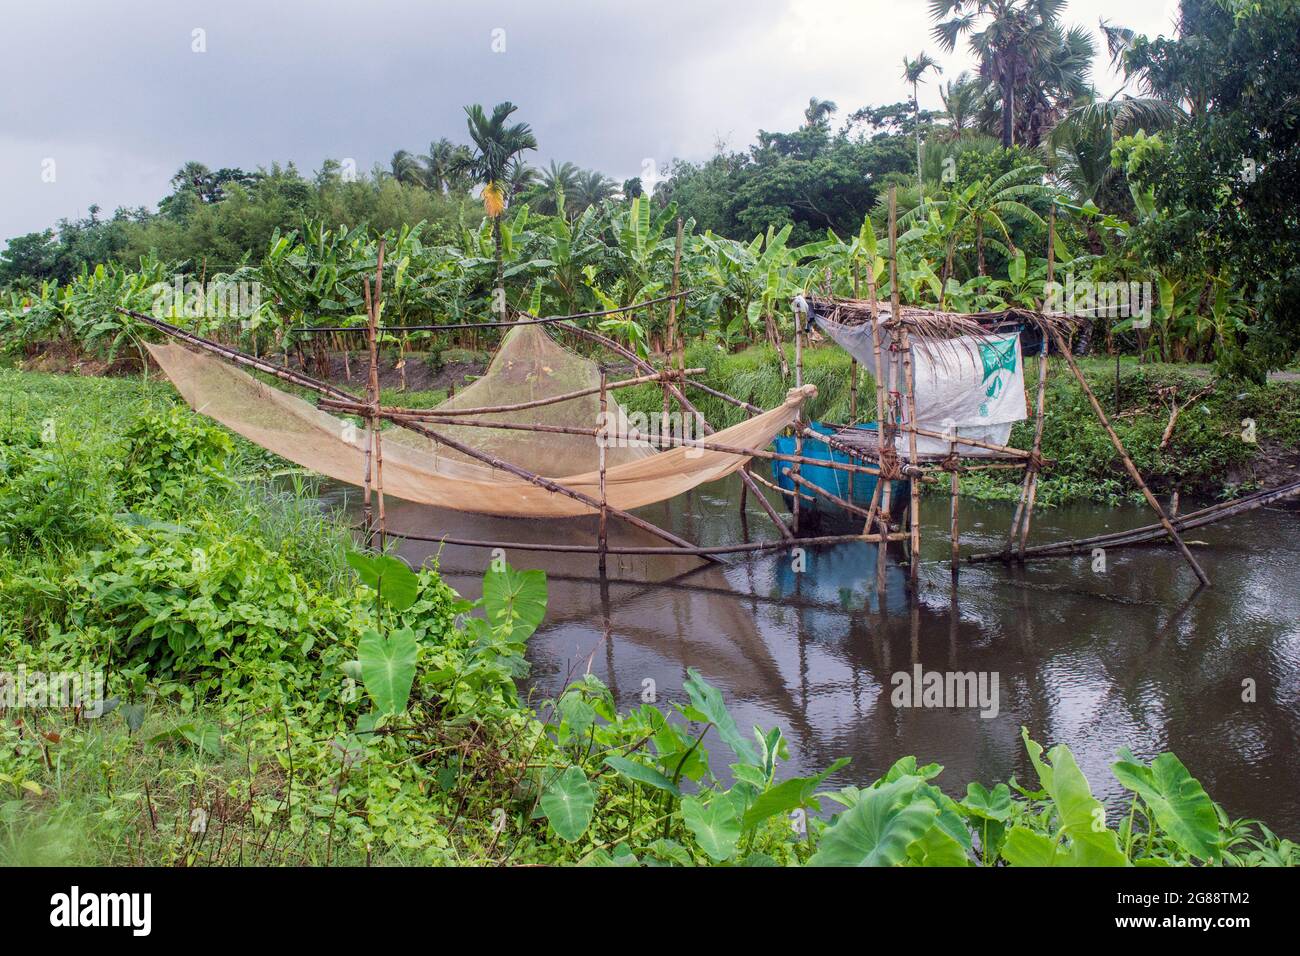 Photo d'un filet de pêche spécial de la région rurale du Sud 24 Parganas. Le filet est placé dans un cadre spécial en bambou. Banque D'Images